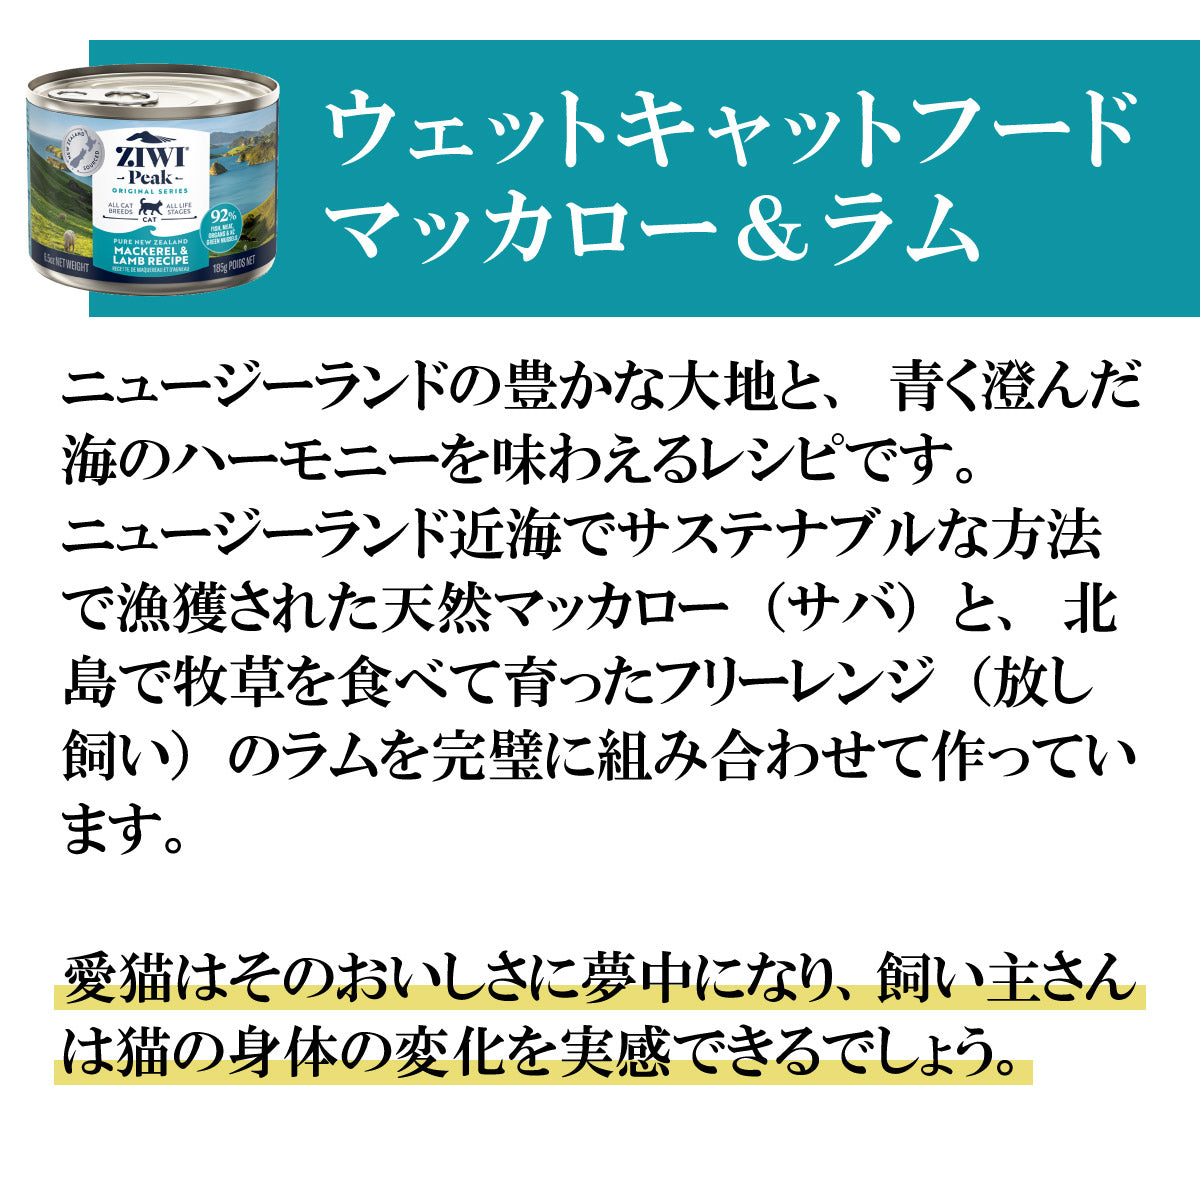 ジウィ ZIWI キャットフード キャット缶 マッカロー＆ラム 185g×12缶【送料無料】 正規品 無添加 ジウィピーク